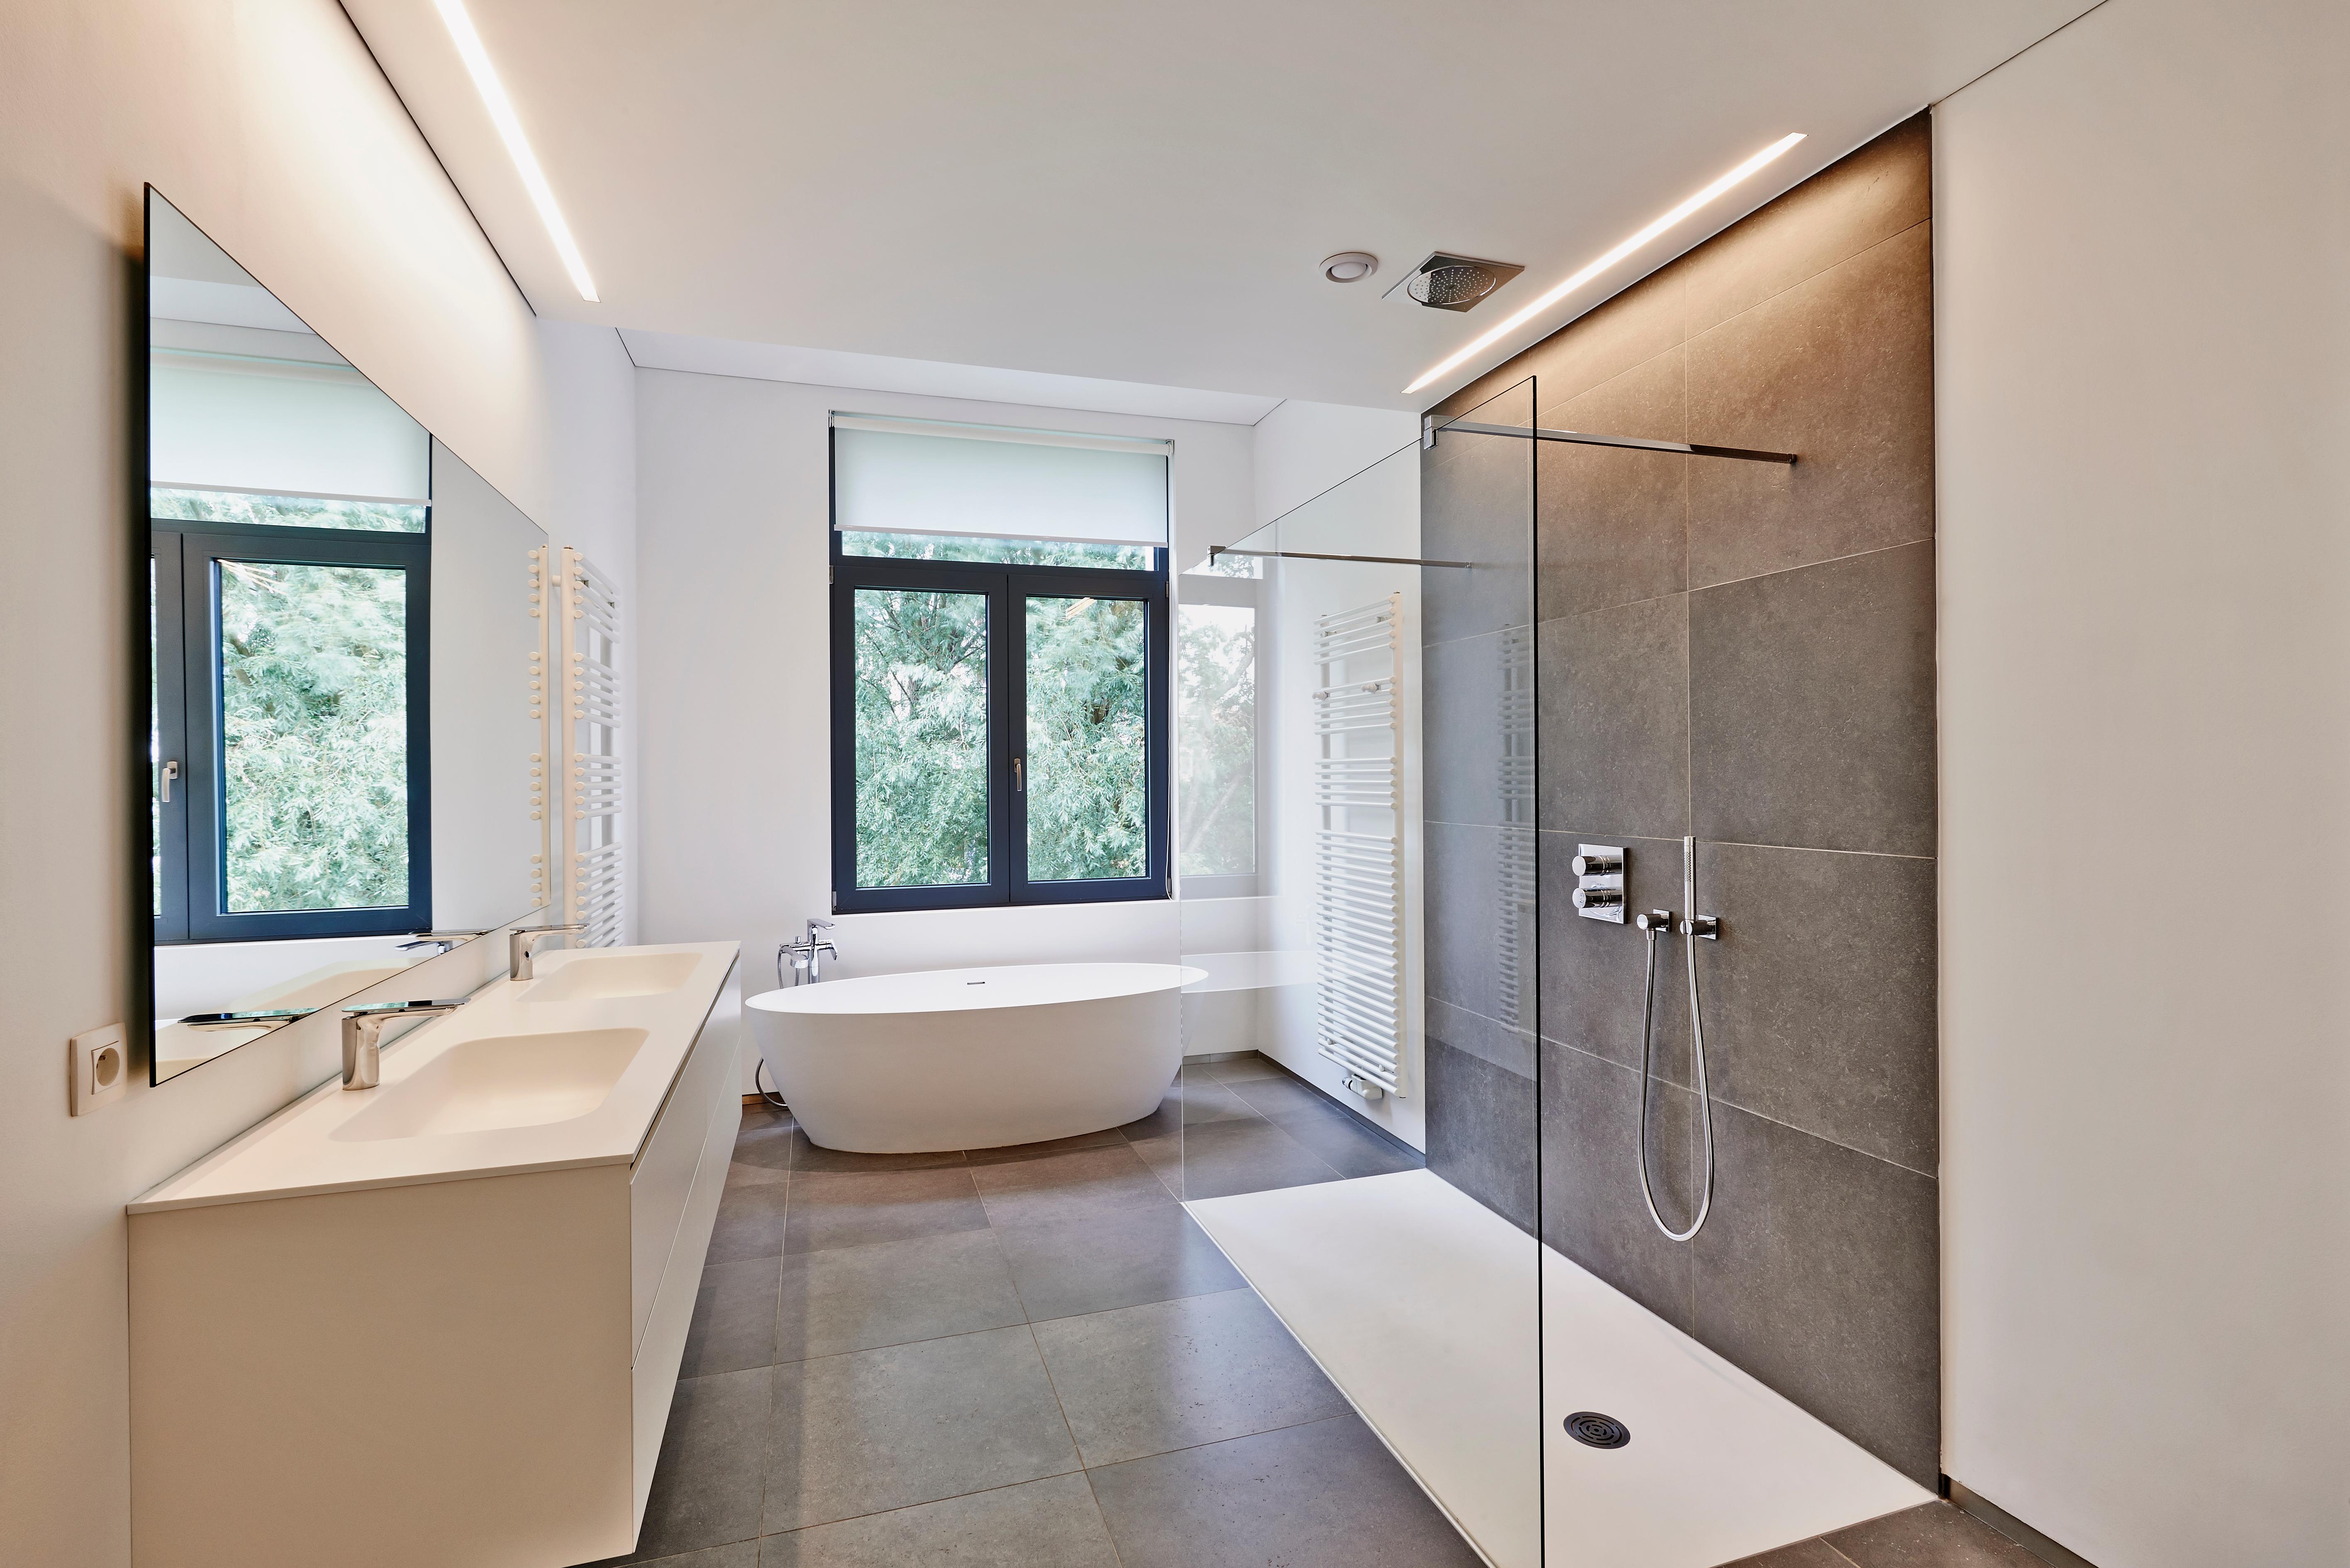 Ein minimalistisches Badezimmer mit grossen Fliesen.